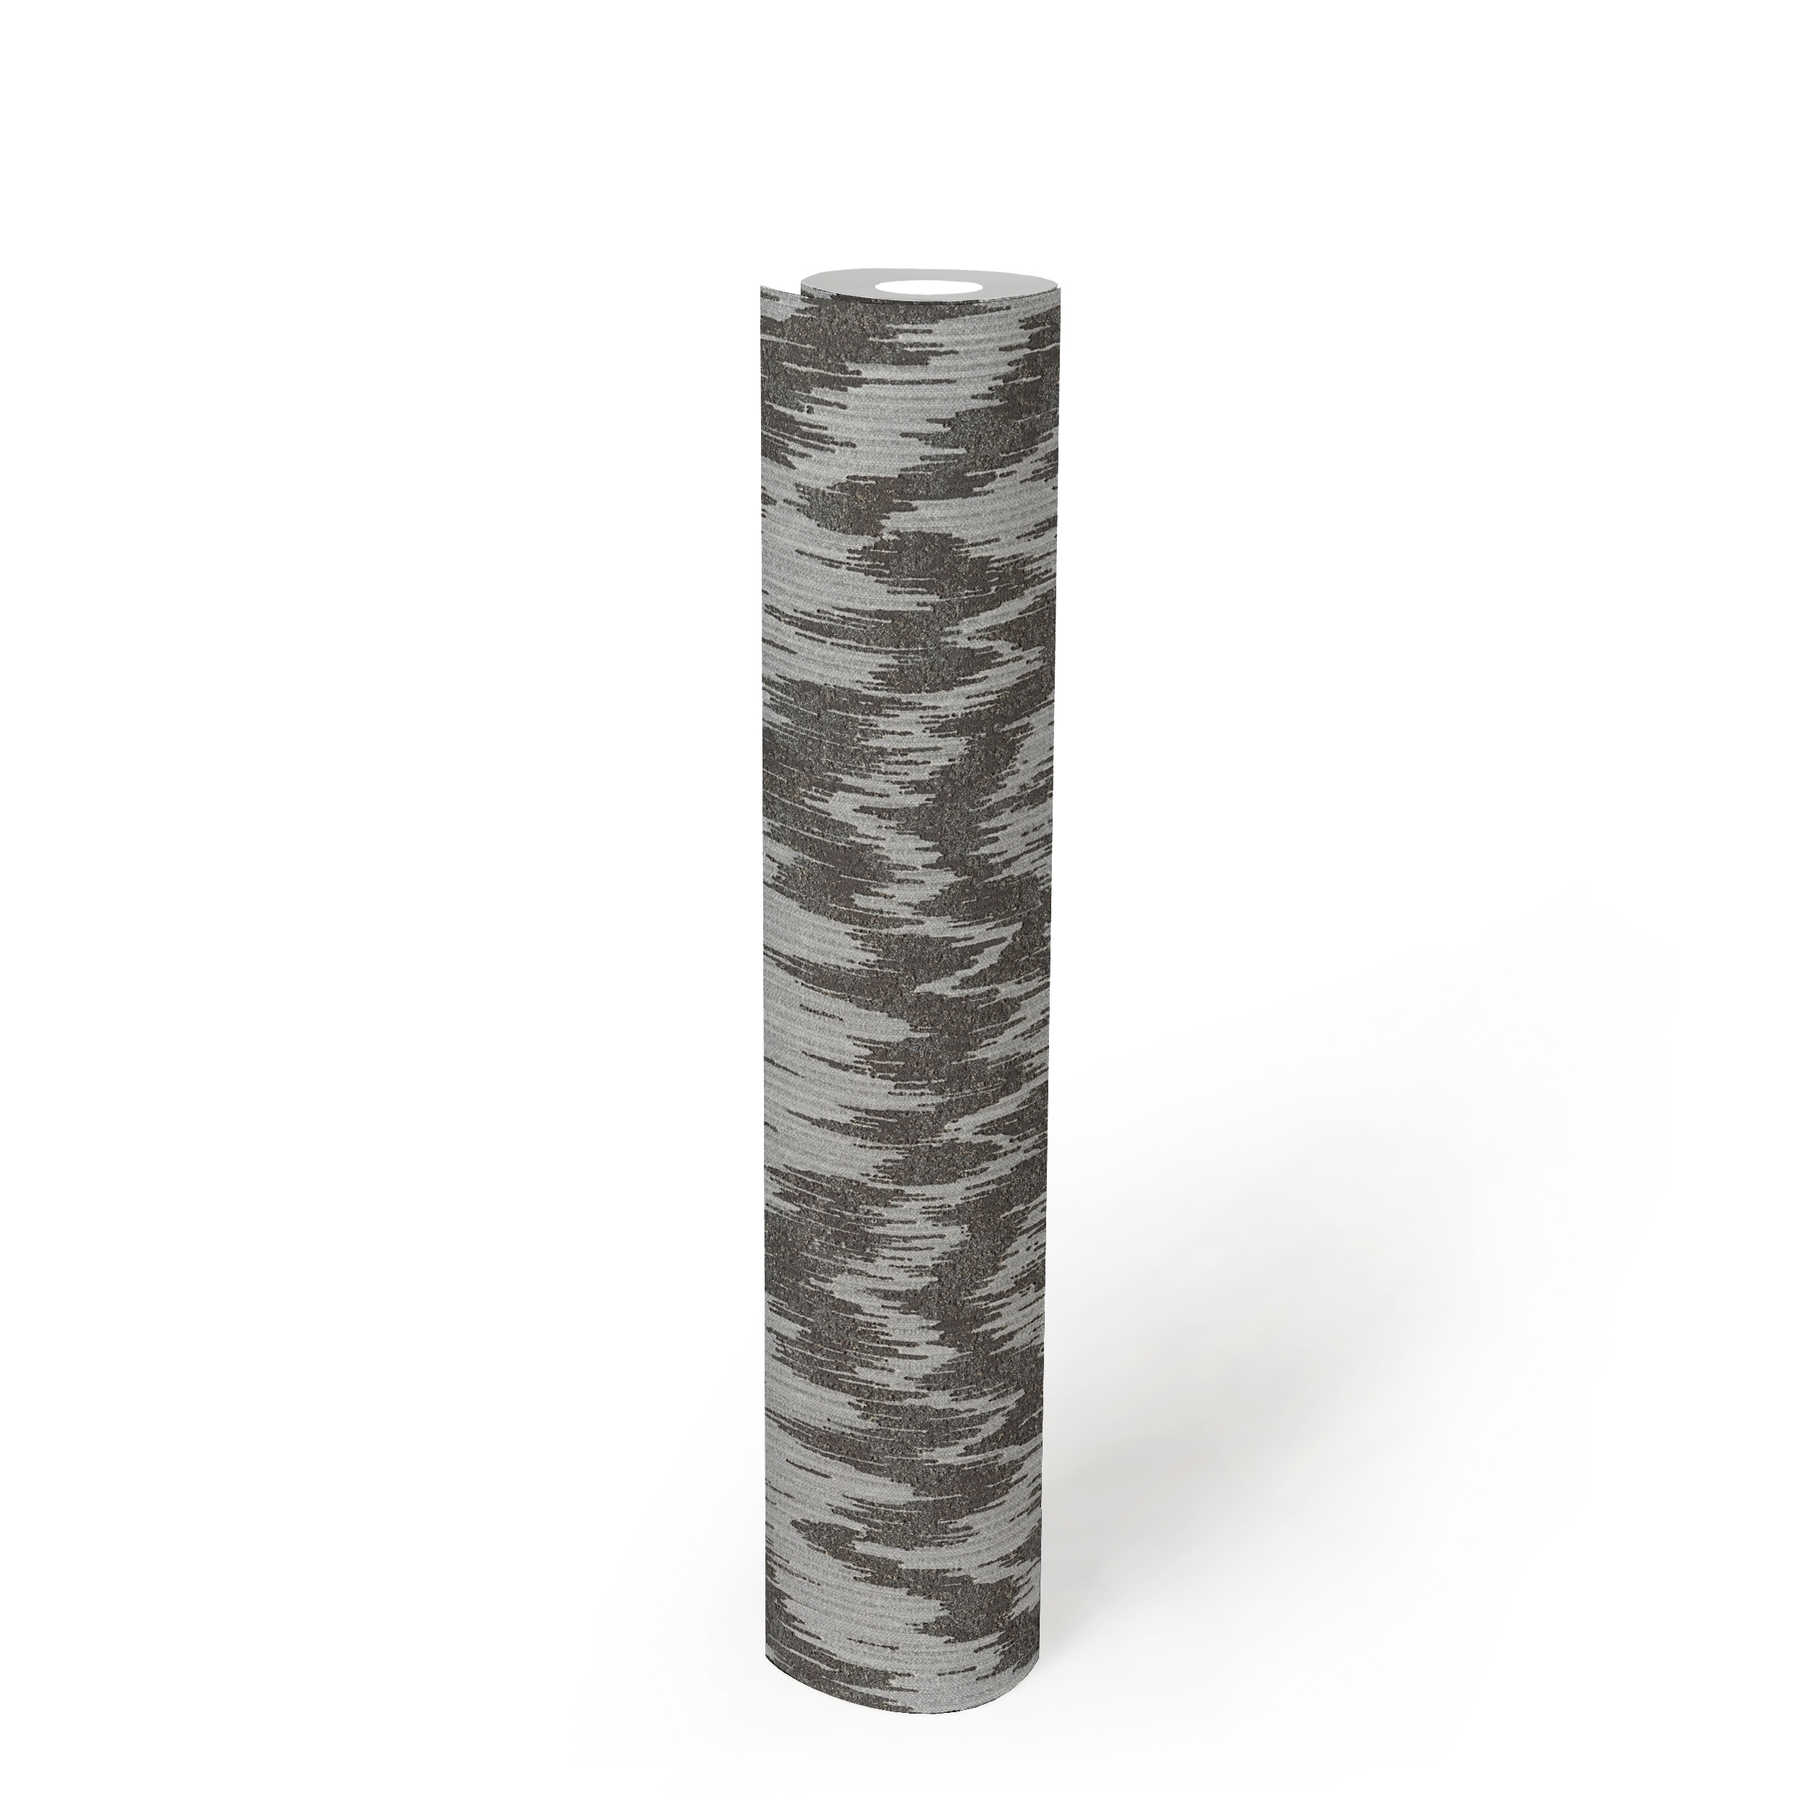             Vliesbehang ethno stijl met metallic textiel design - grijs, metallic
        